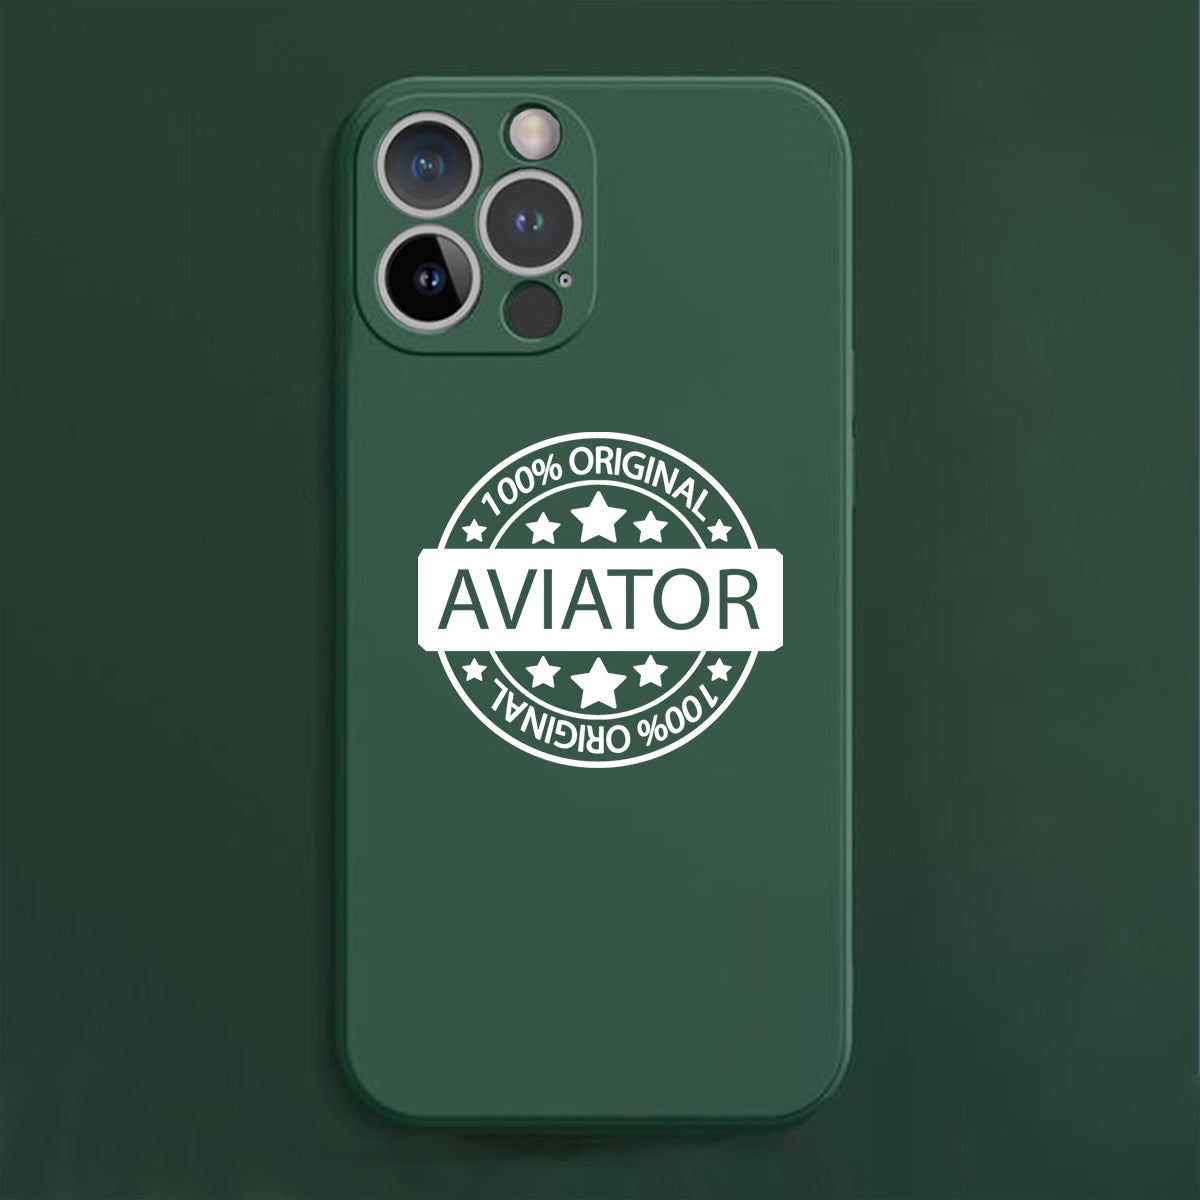 100 Original Aviator Designed Soft Silicone iPhone Cases